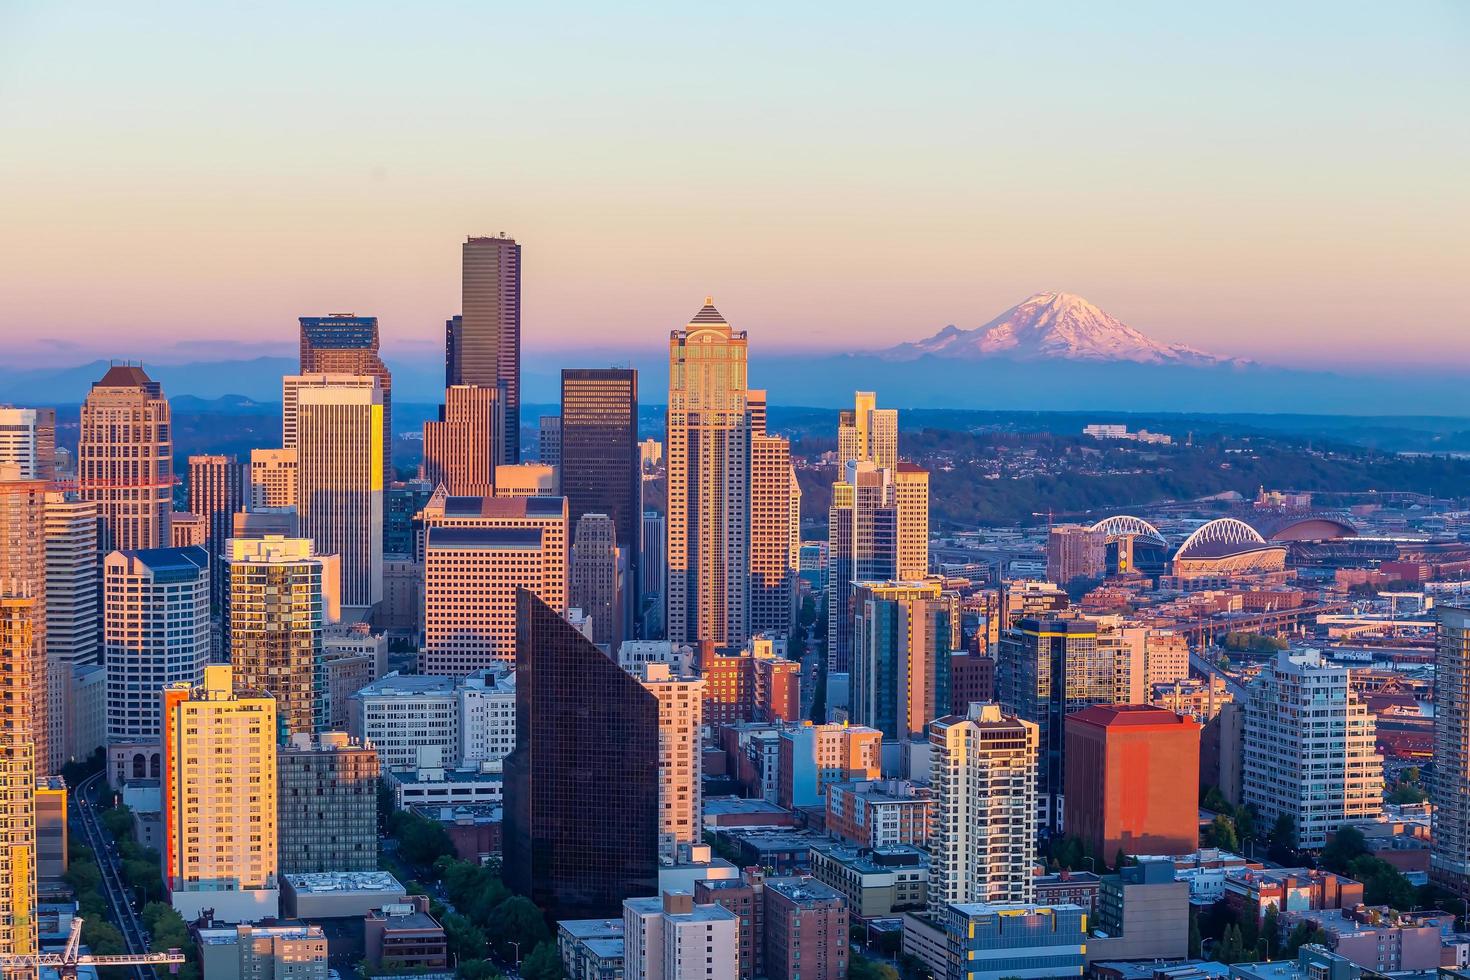 paisagem urbana da cidade de Seattle no centro da cidade no estado de Washington, EUA foto